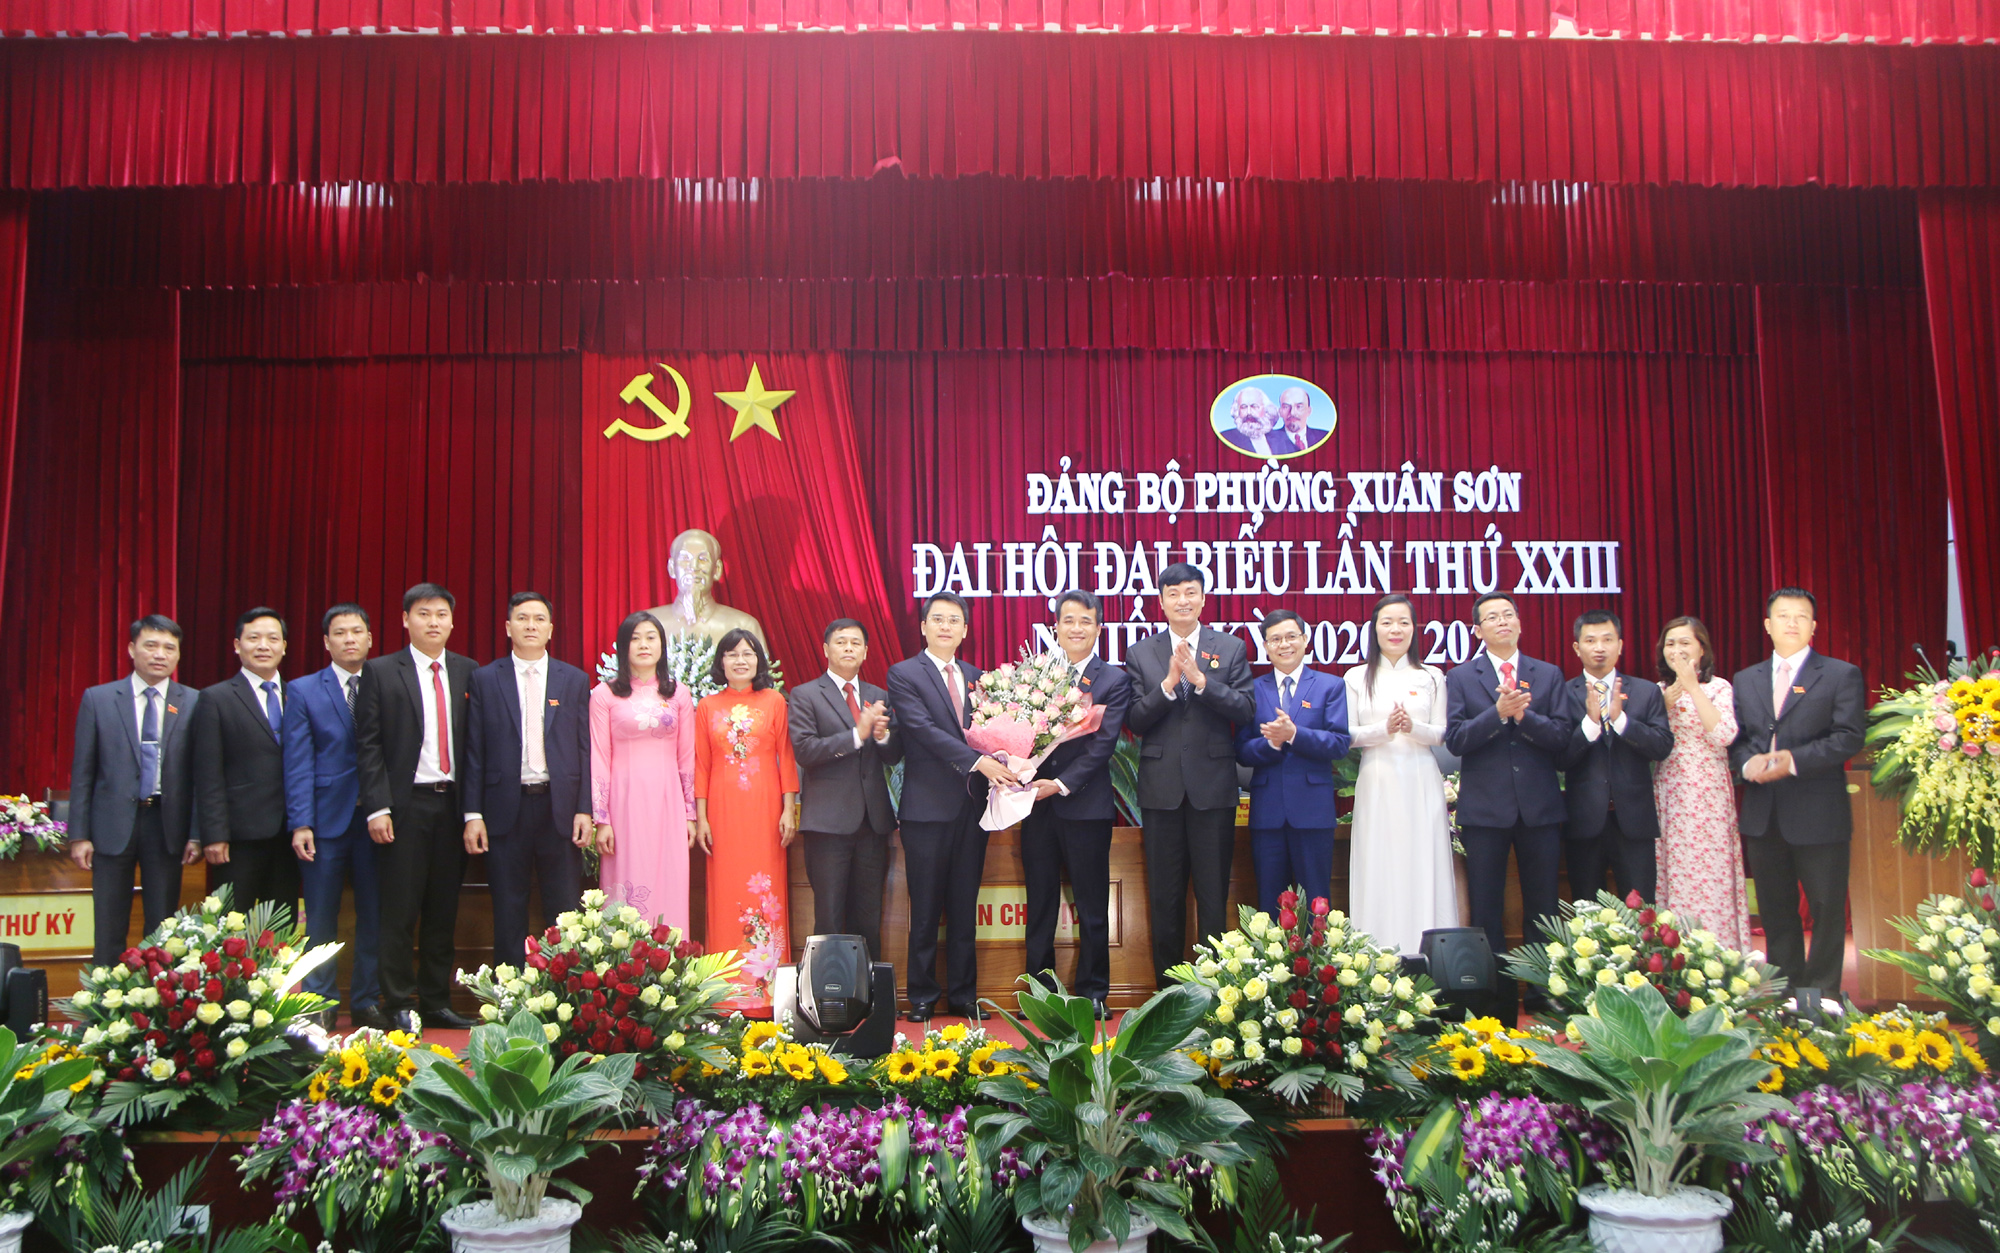 Lãnh đạo TX Đông Triều tặng hoa chúc mừng Ban Chấp hành Đảng bộ phường Xuân Sơn lần thứ XXIII, nhiệm kỳ 2020-2025. Ảnh: Mạnh Trường